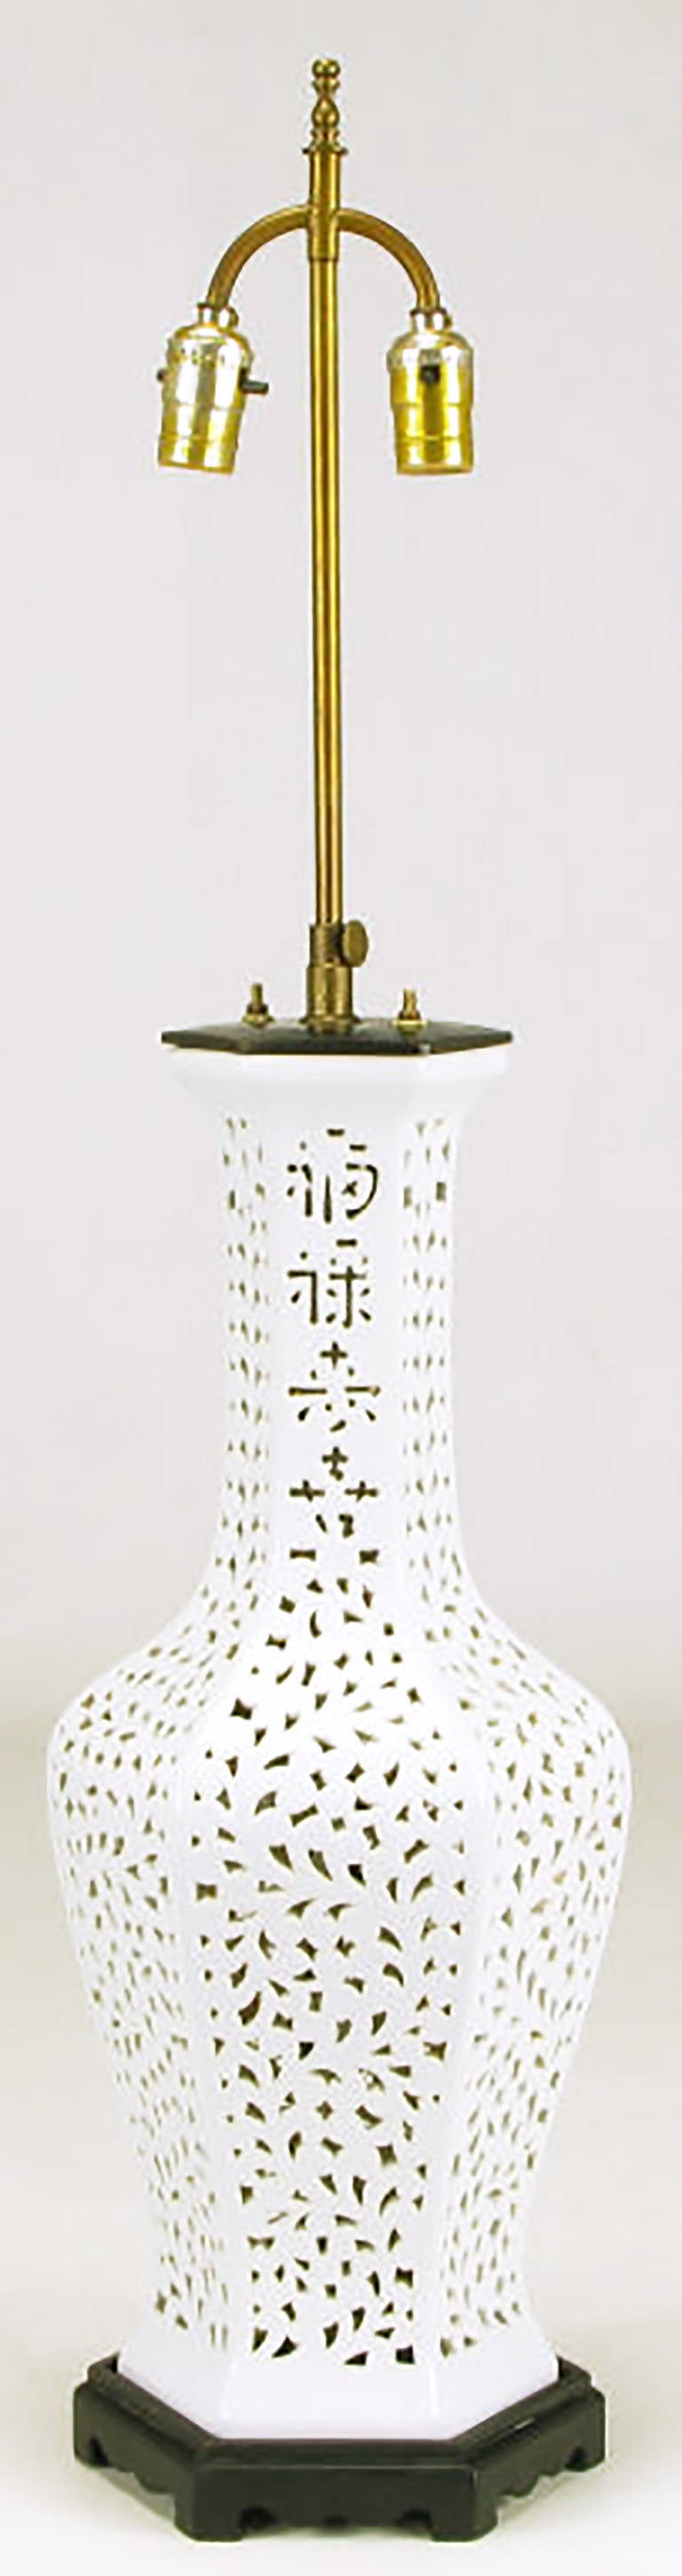 Netzartige Blanc de Chine-Tischlampe in sechseckiger Vasenform, mit asiatischem Schriftzeichen im Hals. Schwarz lackierter Holzsockel und Metallkappe mit Messingstiel und Doppelsteckdosen-Beleuchtung. Wird ohne Schirm verkauft.